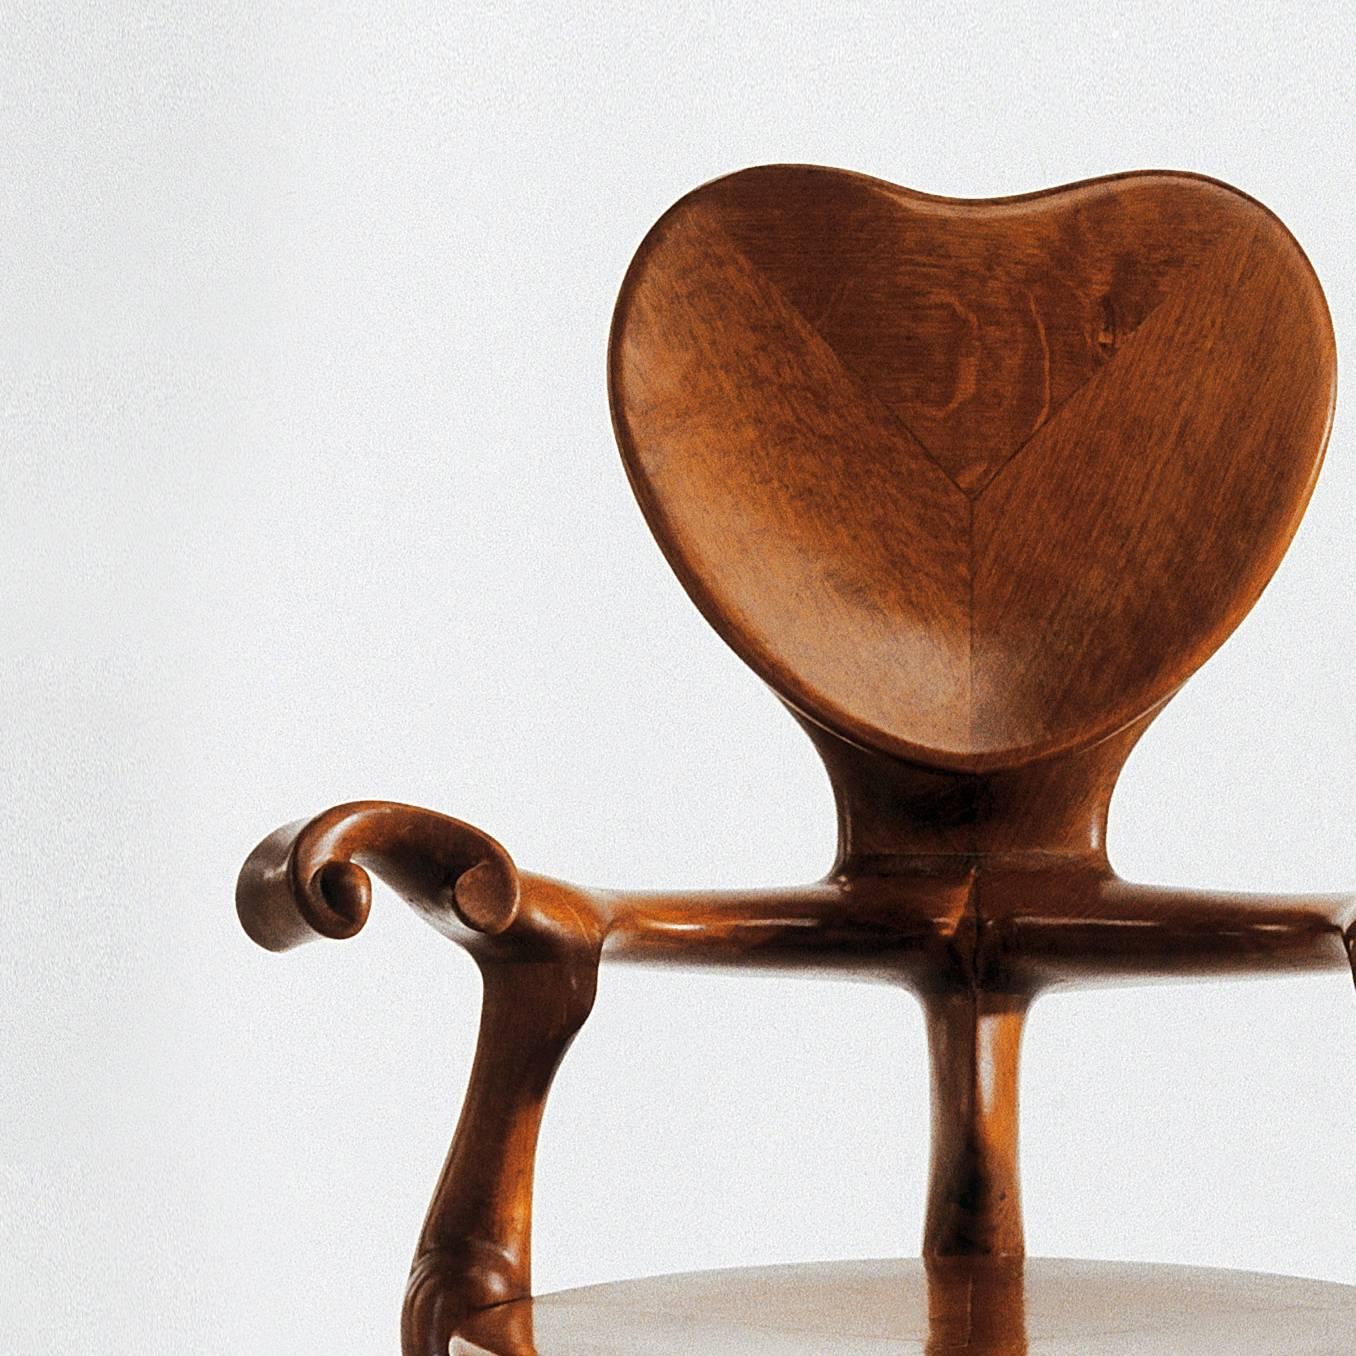 Wir stellen den Antoni Gaudi Calvet Sessel vor, ein zeitloses Stück Kunst und Handwerkskunst, das ein Muss für Designliebhaber und Sammler ist. Dieser von dem berühmten Architekten Antoni Gaudi entworfene und von BD Design hergestellte Sessel